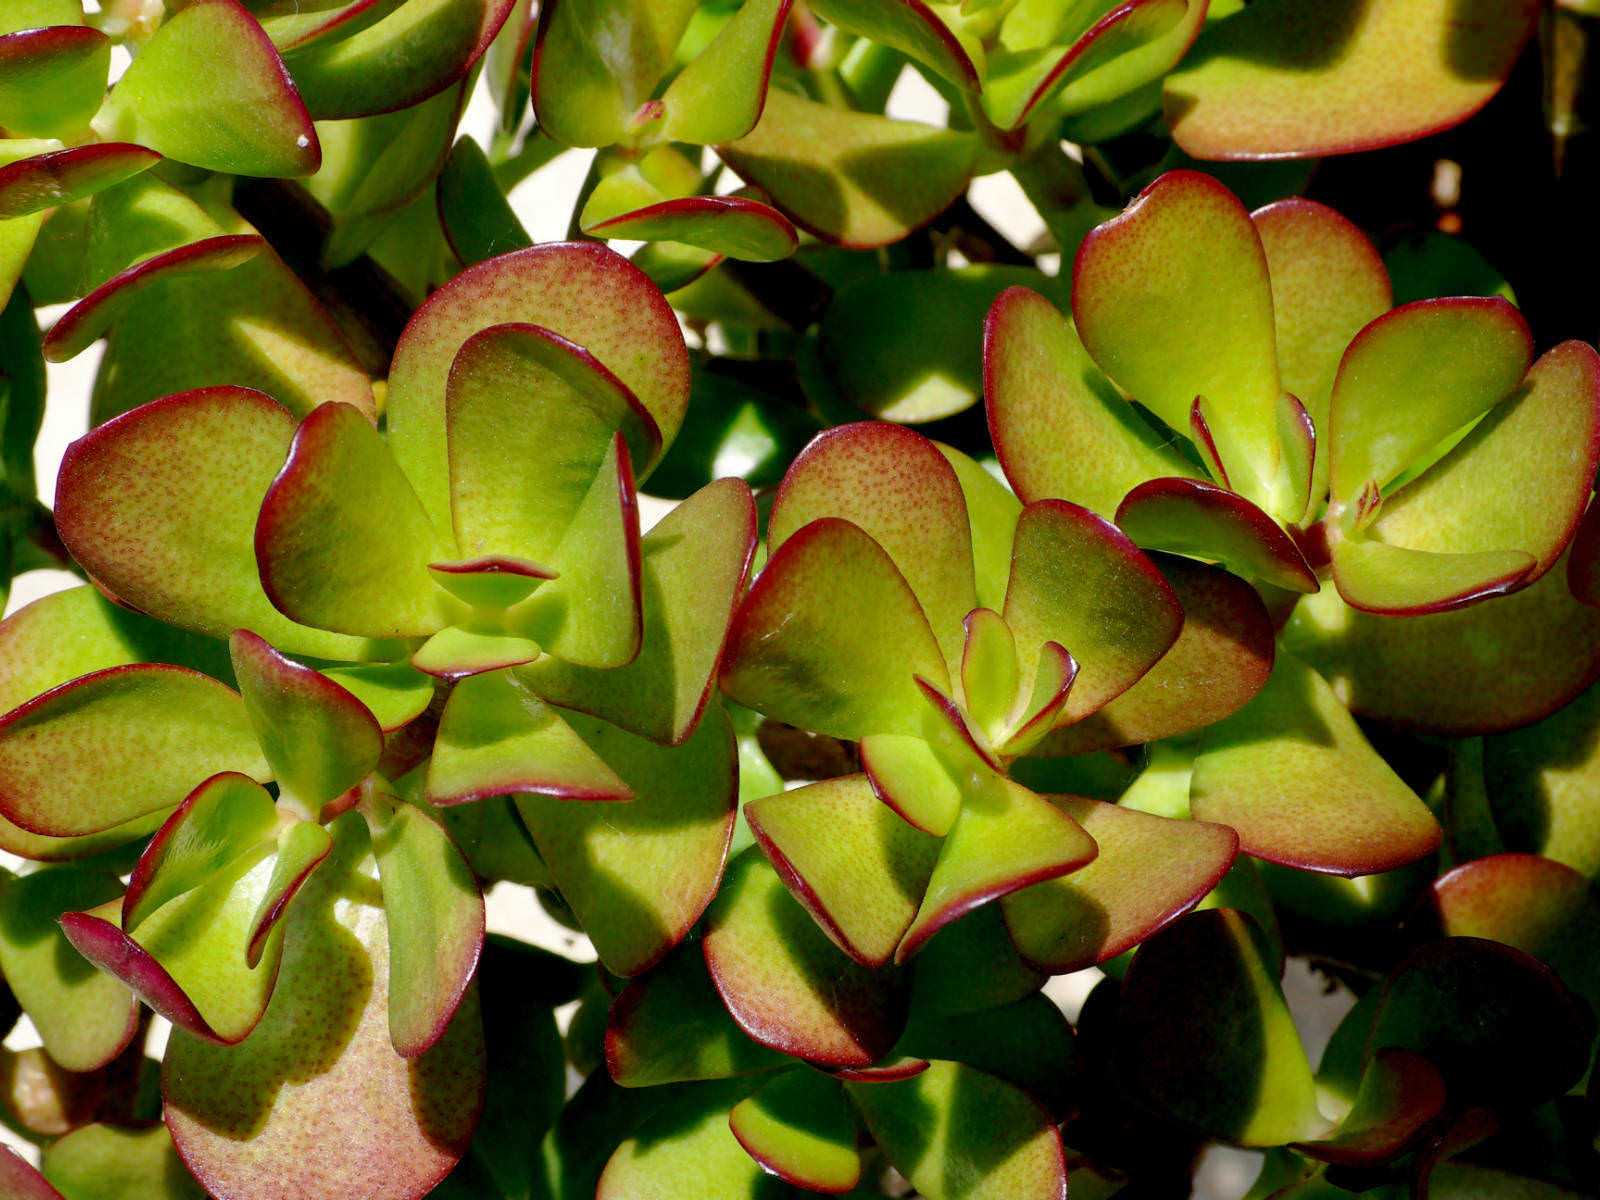 crassula ovata suculentas suculenta succulents worldofsucculents succulent arquidicas magnete funziona positiva plantar jad yougardener grasse banilor arborele portulacea cacto rhipsalis